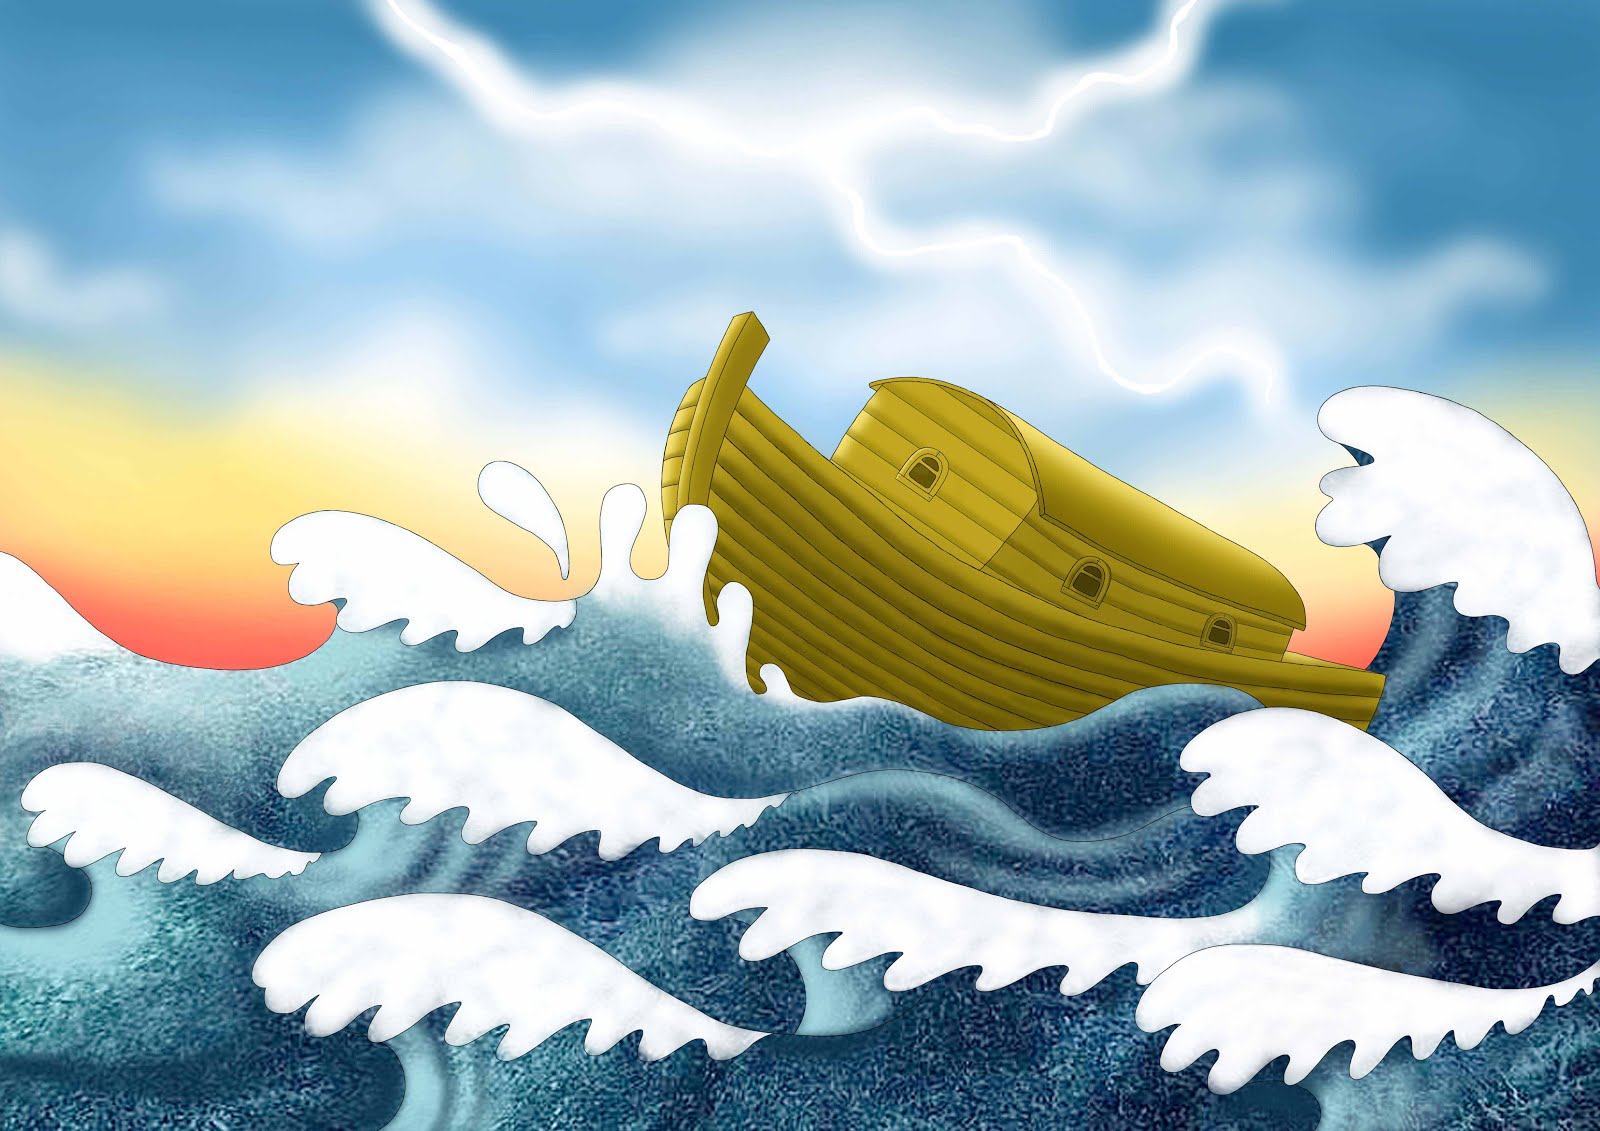 Nuh Tufanı